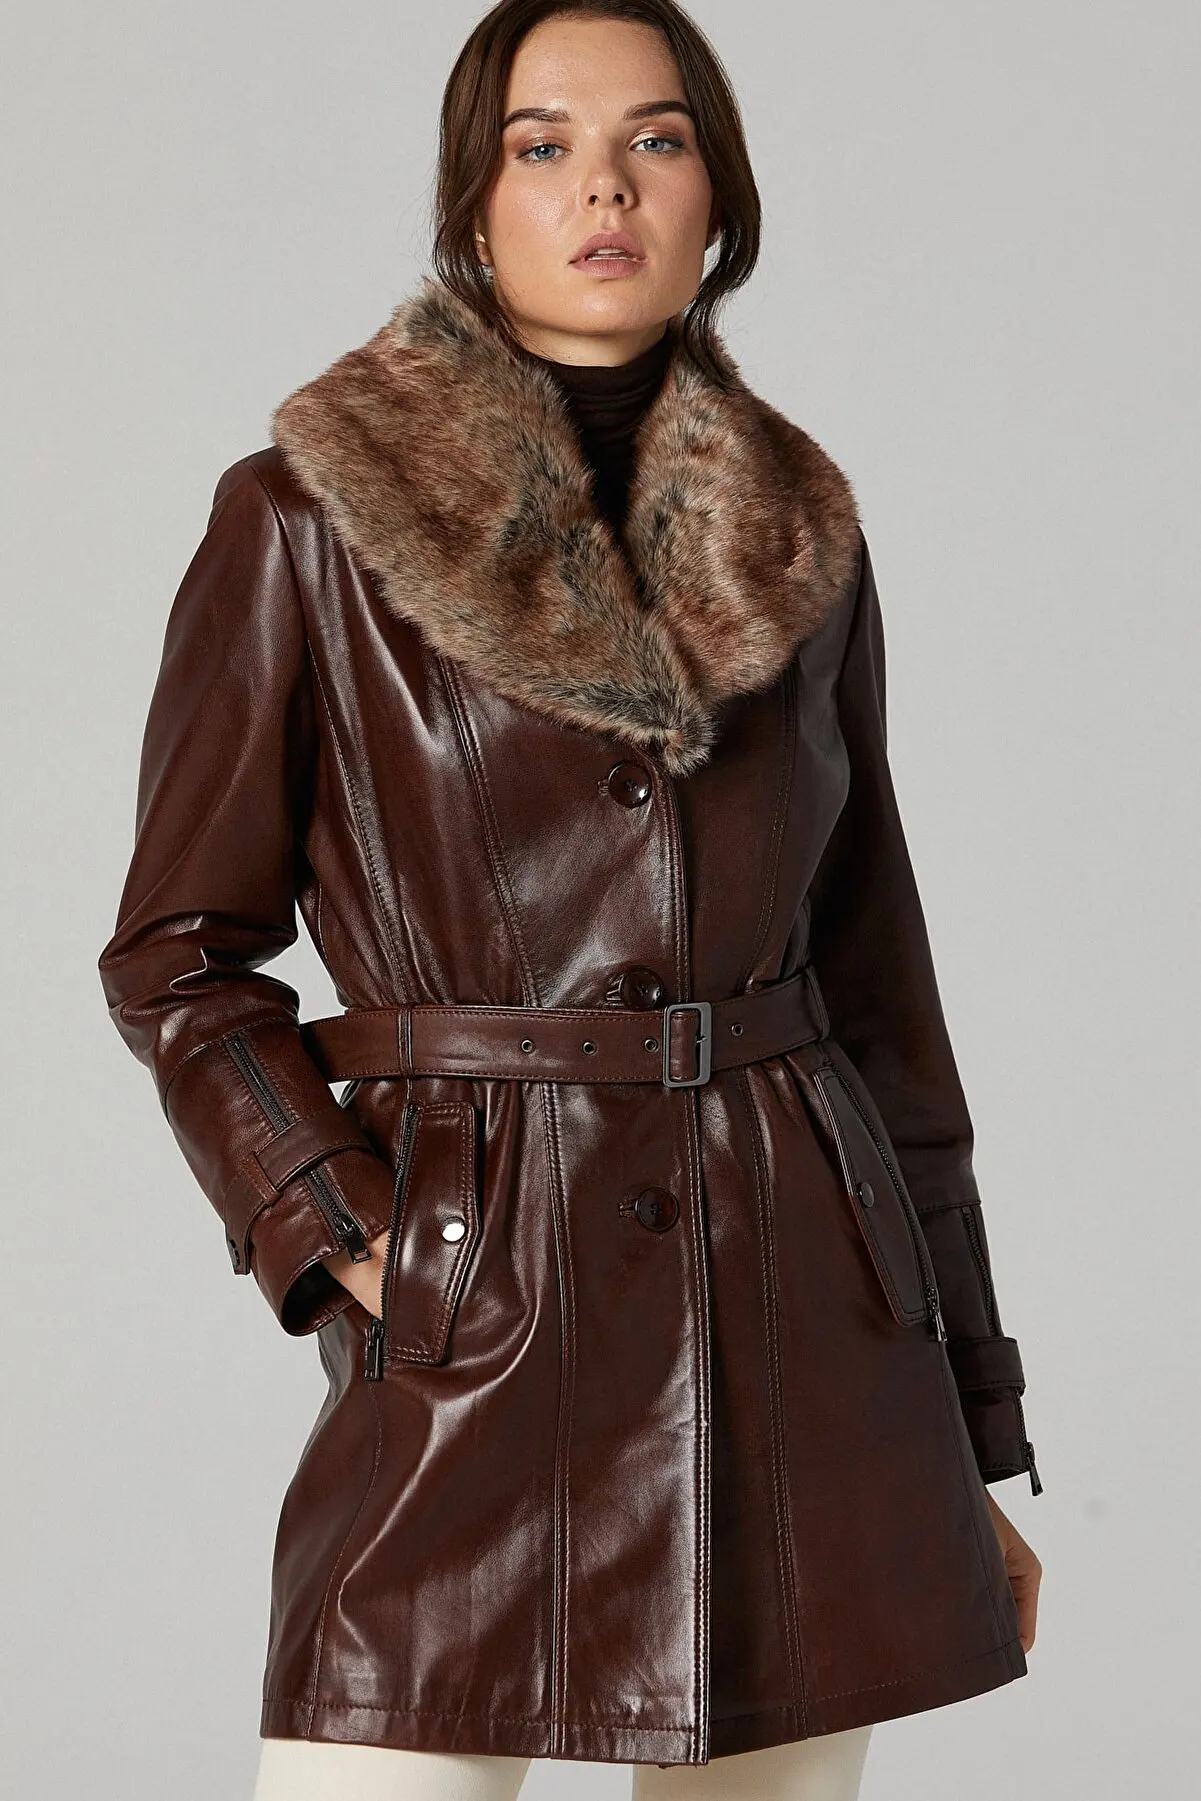 Women's collar fur leather jacket winter black color waterproof leather jacket genuine sheepskin long overcoat warm